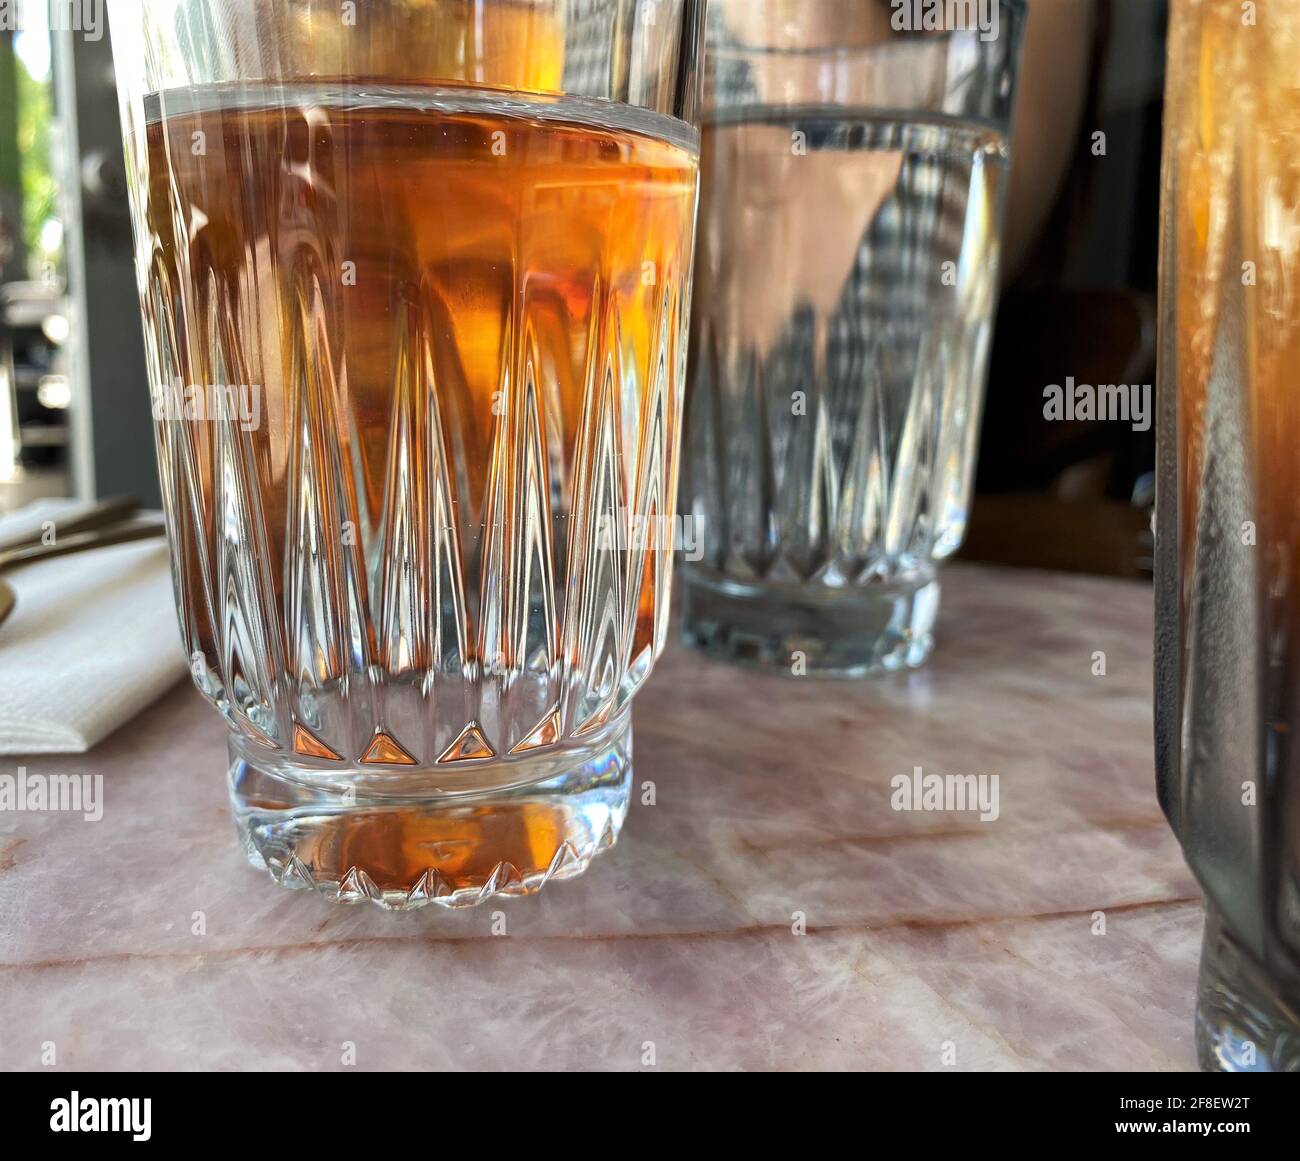 Dettagli di una tazza di vetro con tè freddo all'interno gustati in una calda giornata estiva. Foto Stock